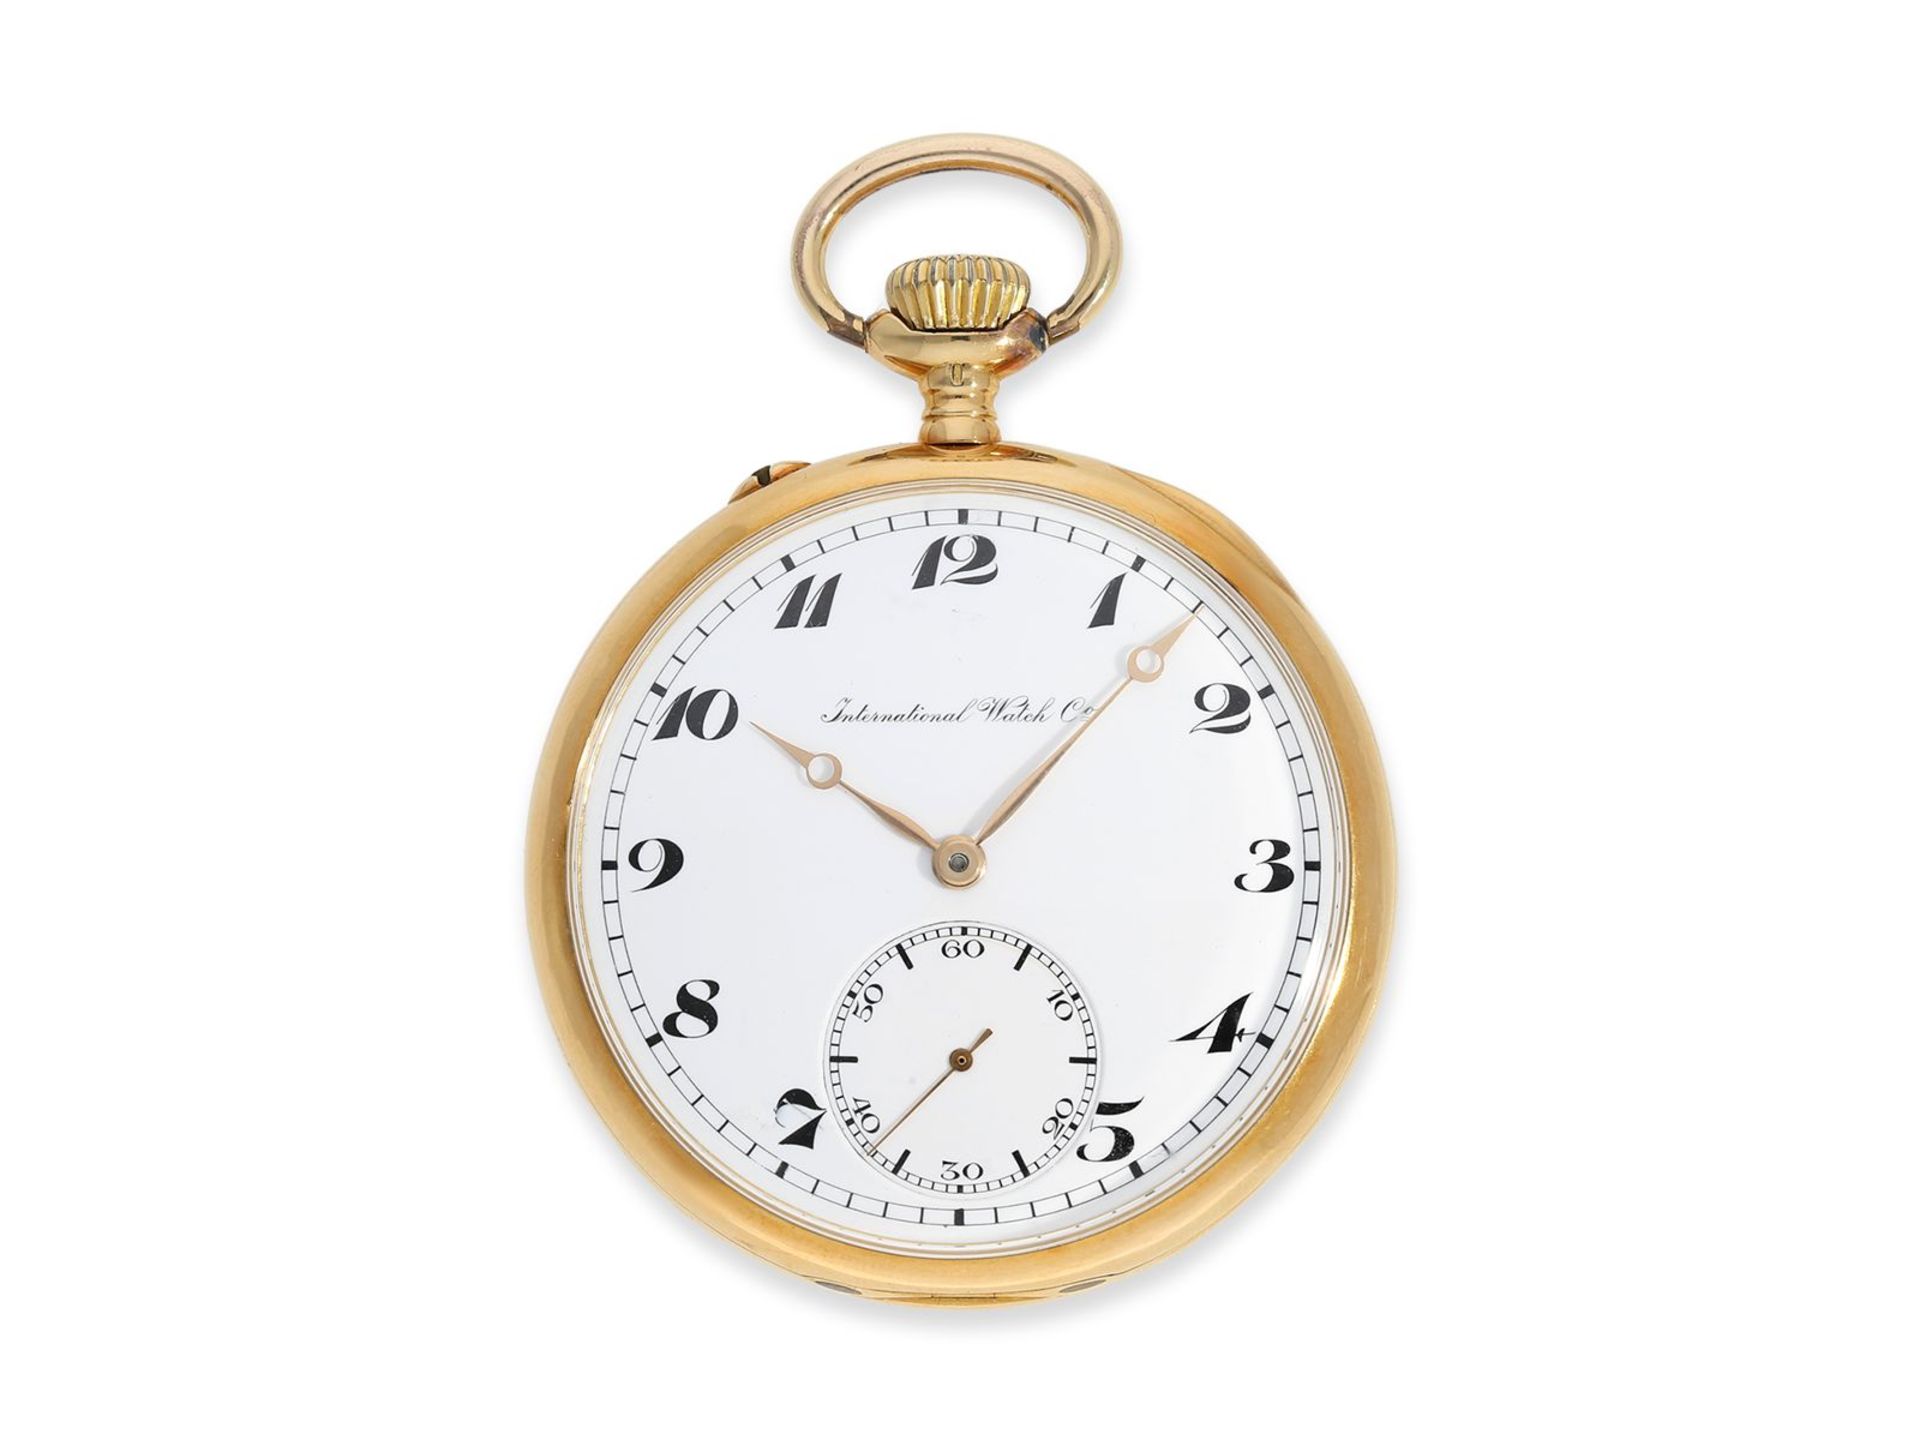 Taschenuhr: sehr seltene IWC in Chronometerqualität, bez. "CHRONOMETRE", ca.1917, Ca. Ø48,5mm, ca.